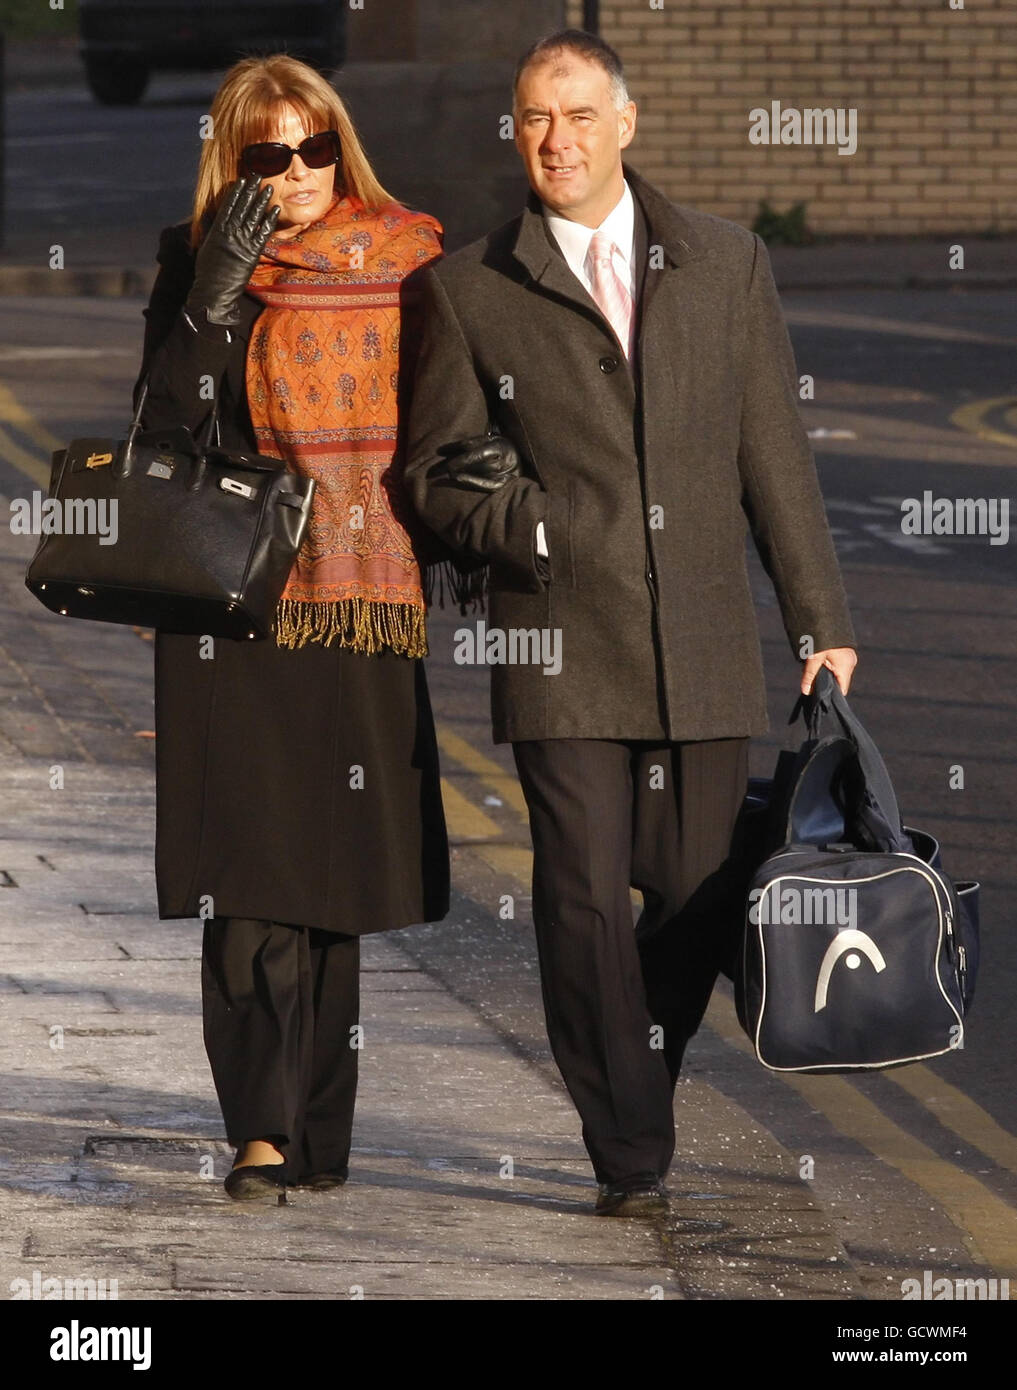 Tommy und Gail Sheridan kommen am High Court in Glasgow an, wo sie vor Gericht gestellt werden, weil sie während Sheridan's erfolgreicher Verleumdungsklage gegen die Zeitung News of the World 2006 unter Eid gelogen haben. Stockfoto